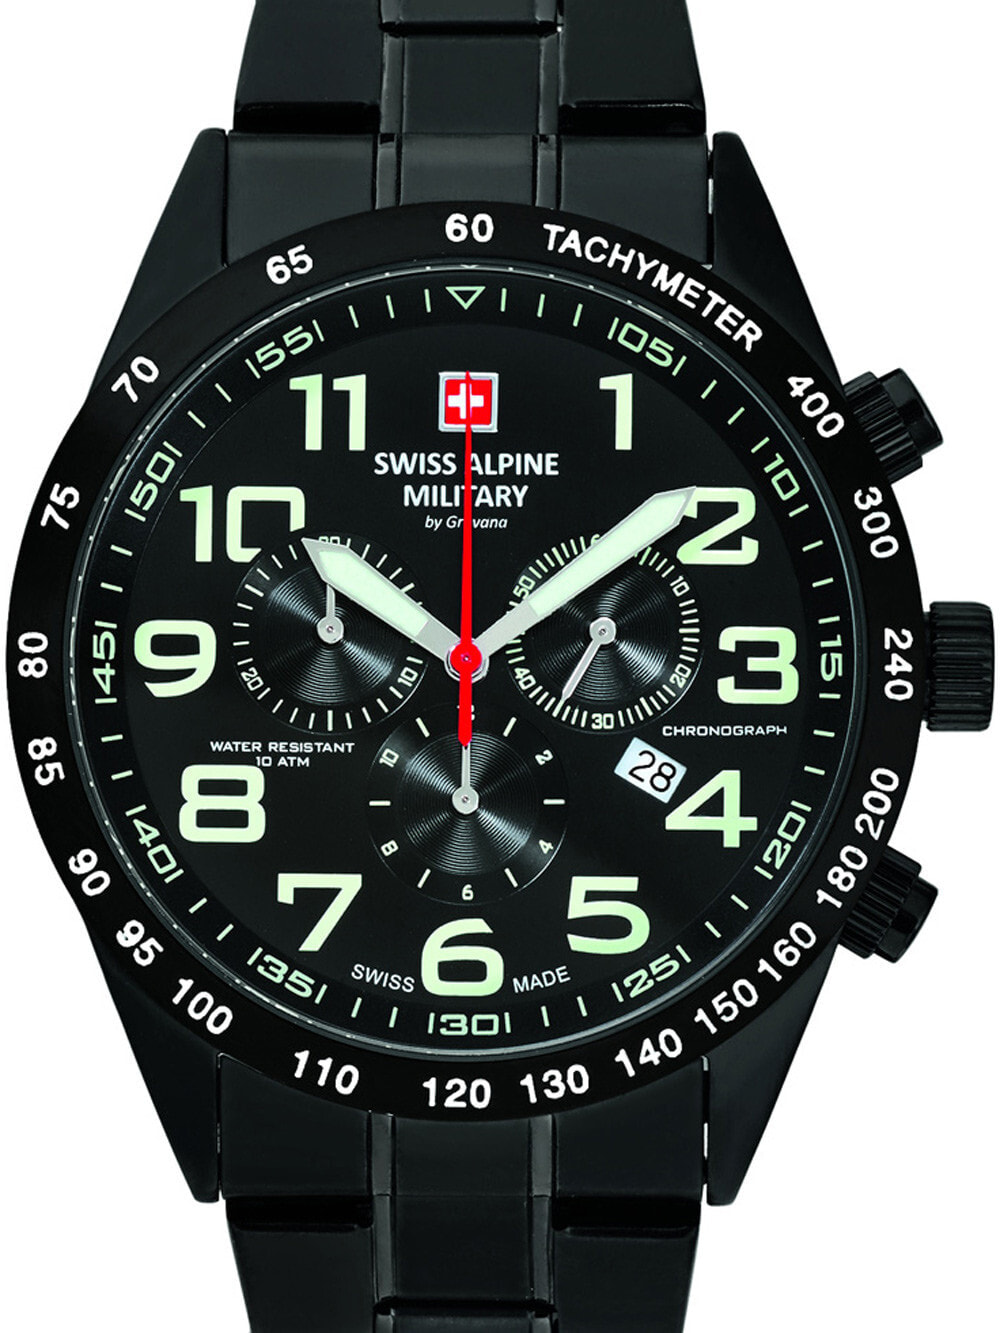 Мужские наручные часы с черным браслетом Swiss Alpine Military 7047.9177 chrono 43mm 10ATM